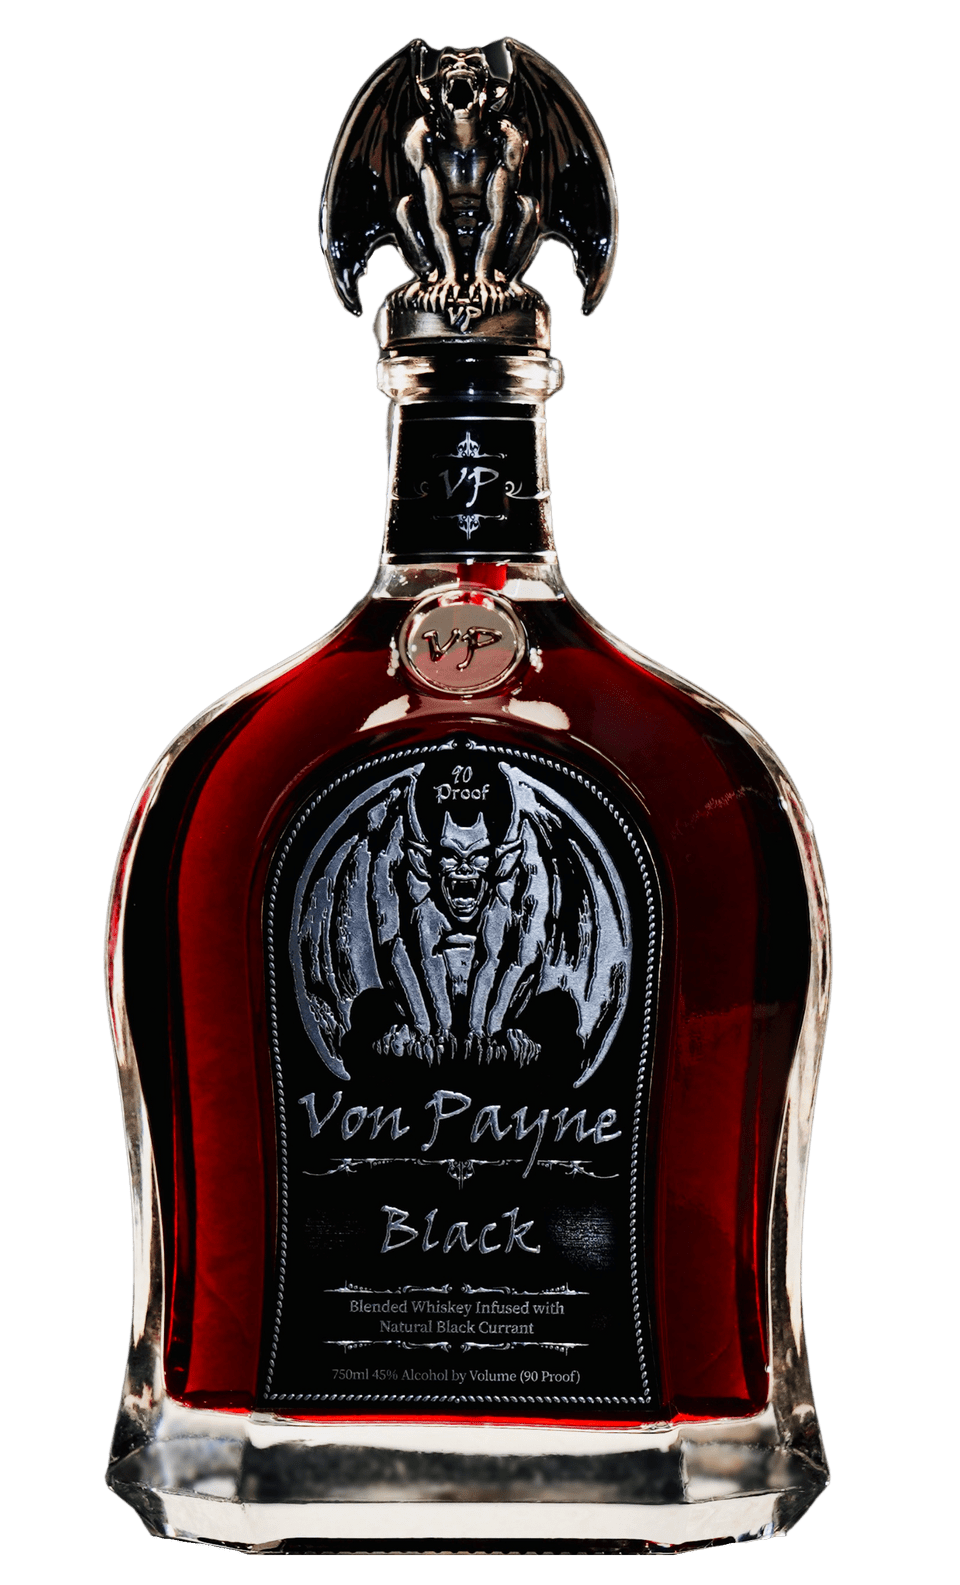 Black Velvet Reserve Canadian Whiskey, 750 ml – O'Brien's Liquor & Wine